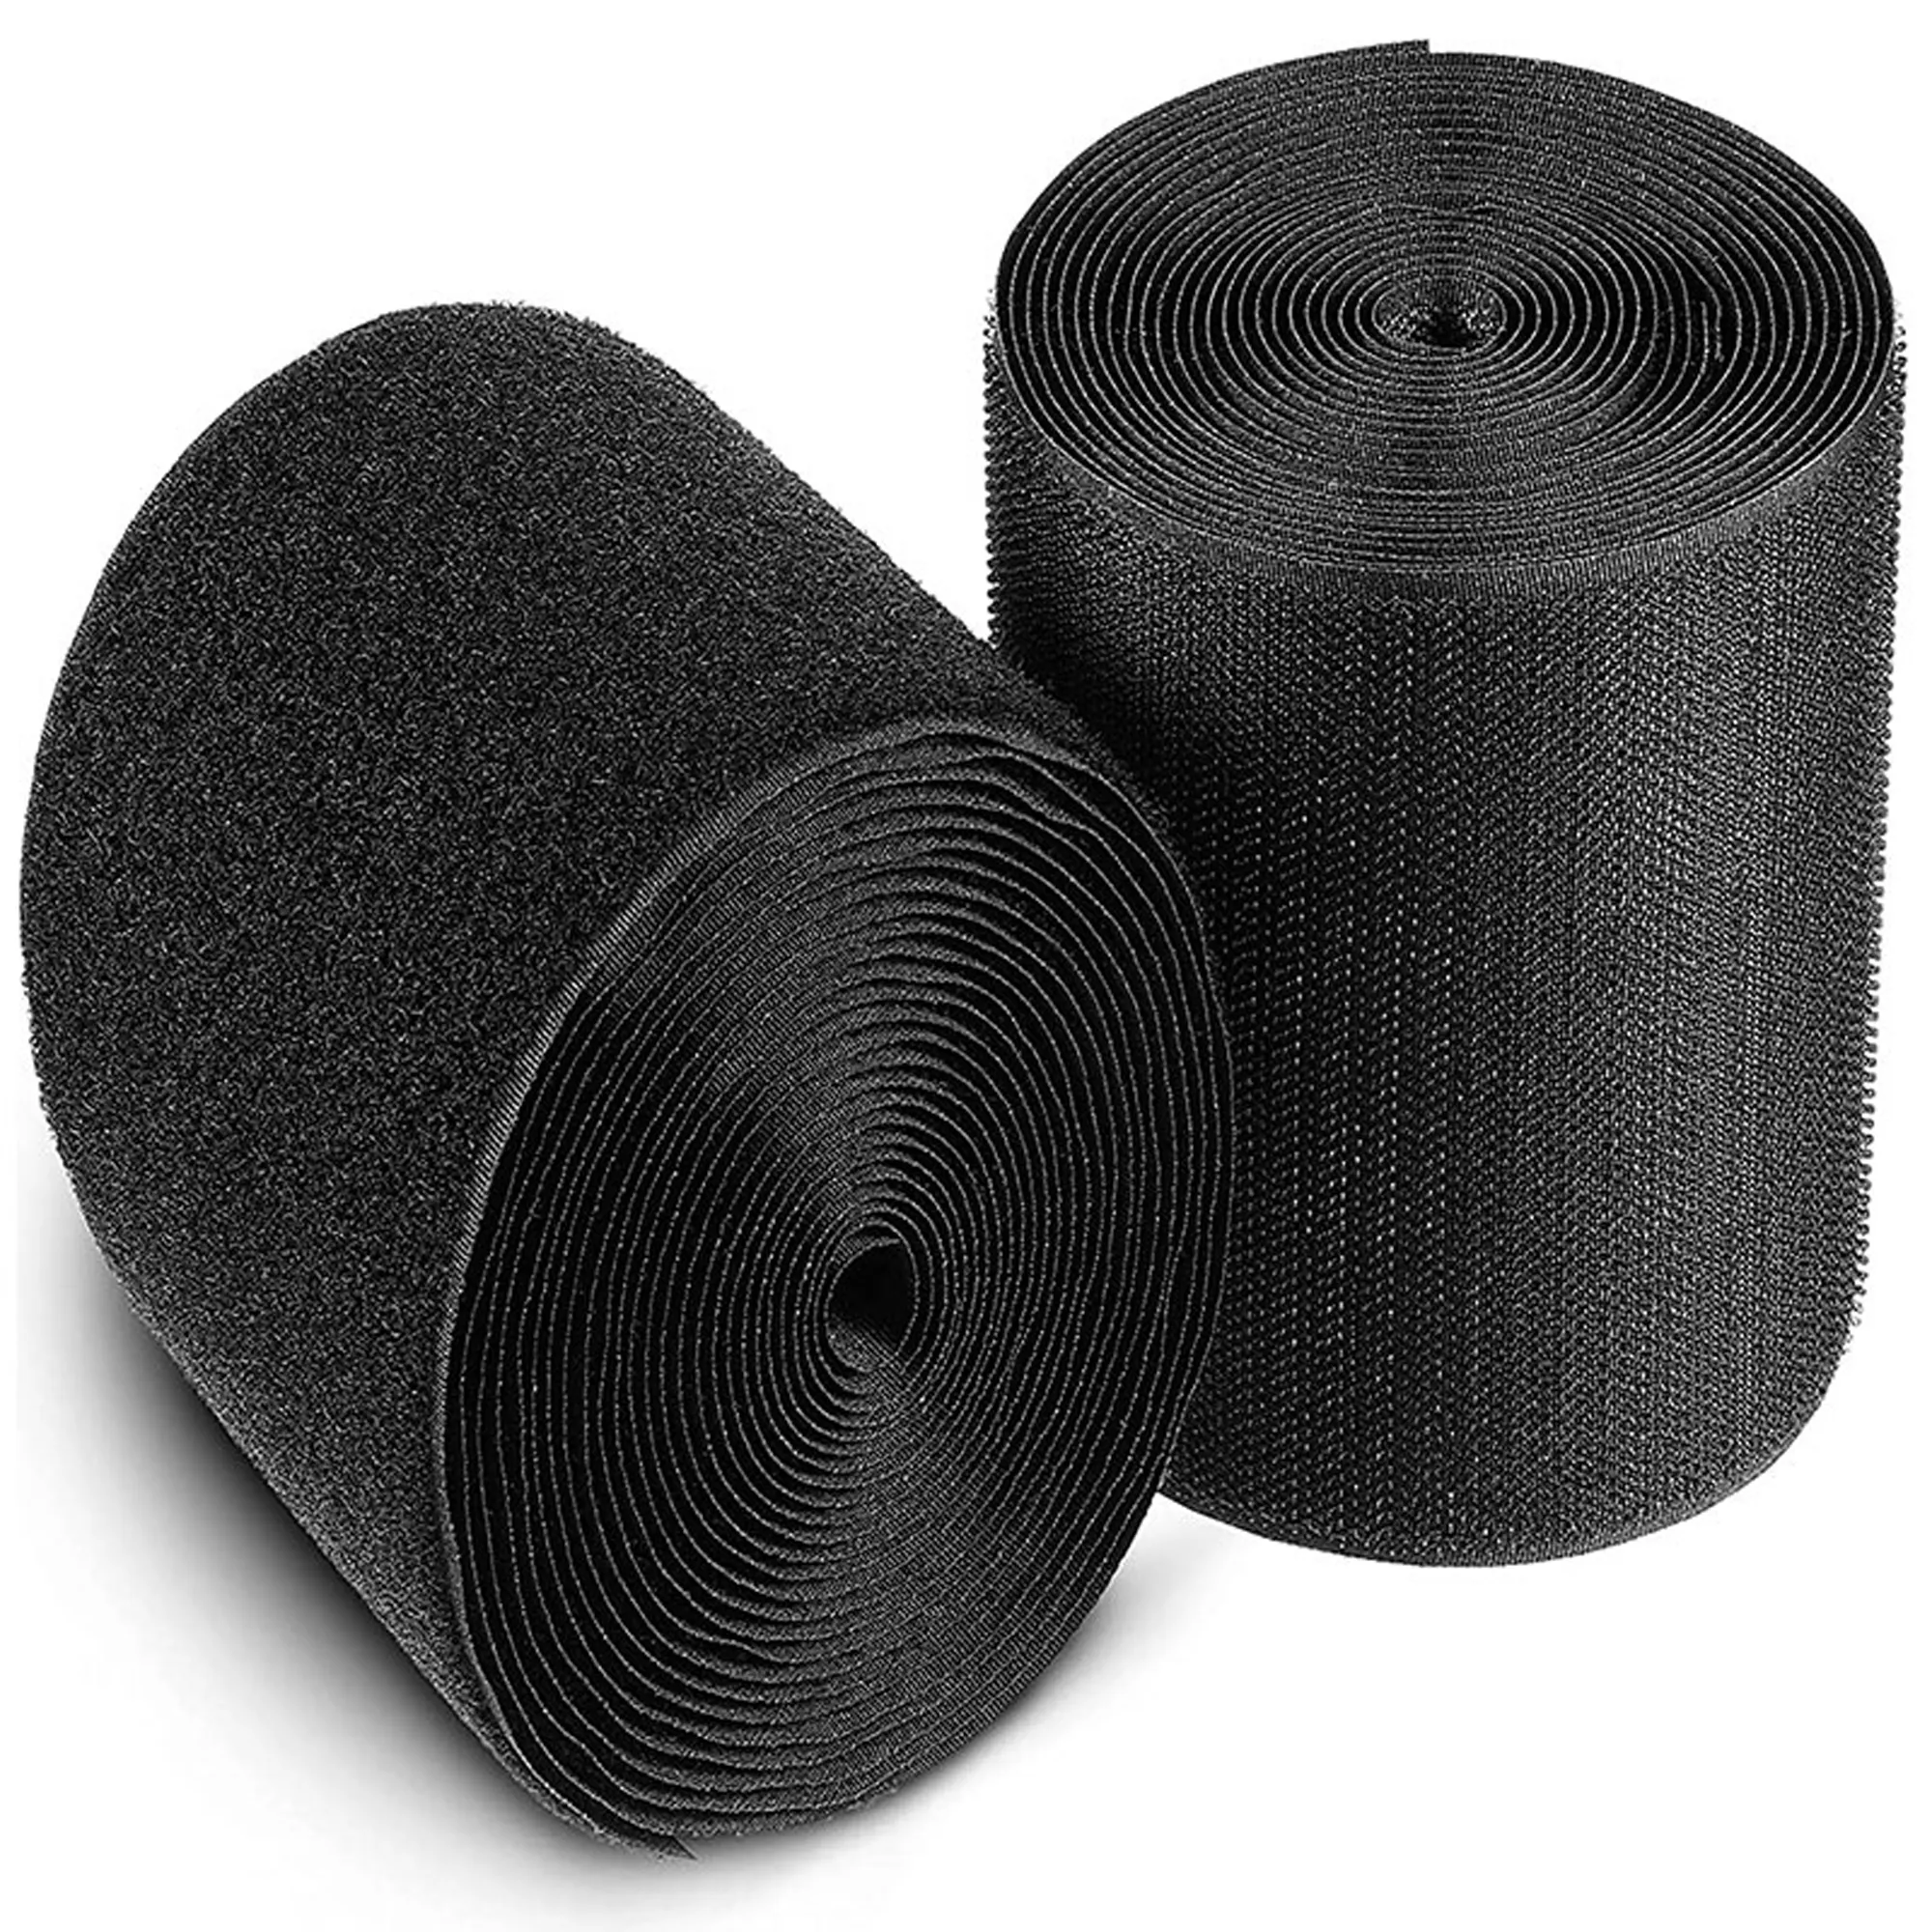 Yapışkan olmayan cırt cırt bağlantı elemanları güçlü bant naylon kumaş bant DIY dikiş aksesuarları için 16mm-150 siyah ve beyaz Vulc bant